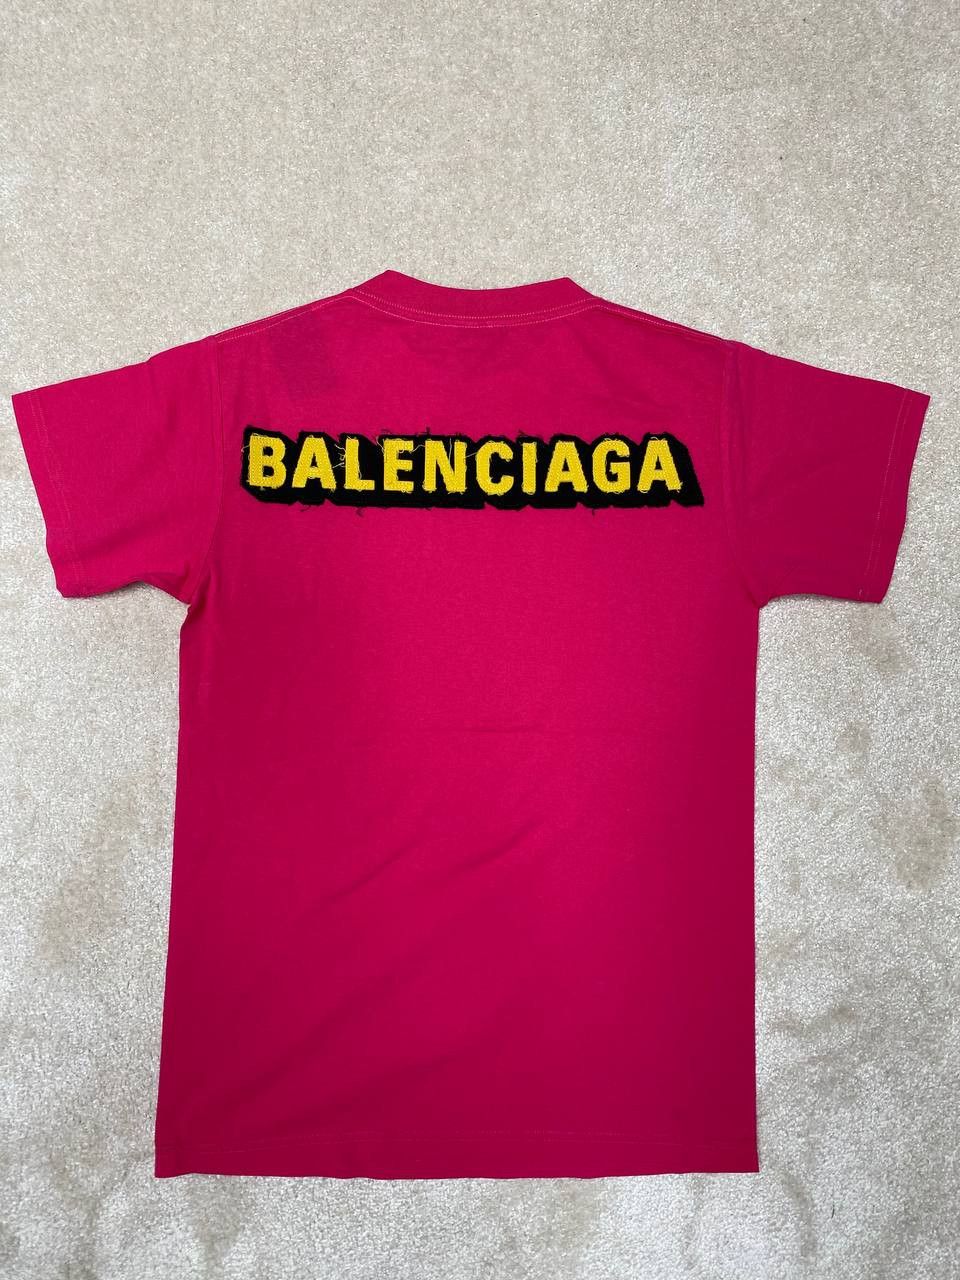 Balenciaga Balenciaga Patch Logo T-shirt | Grailed